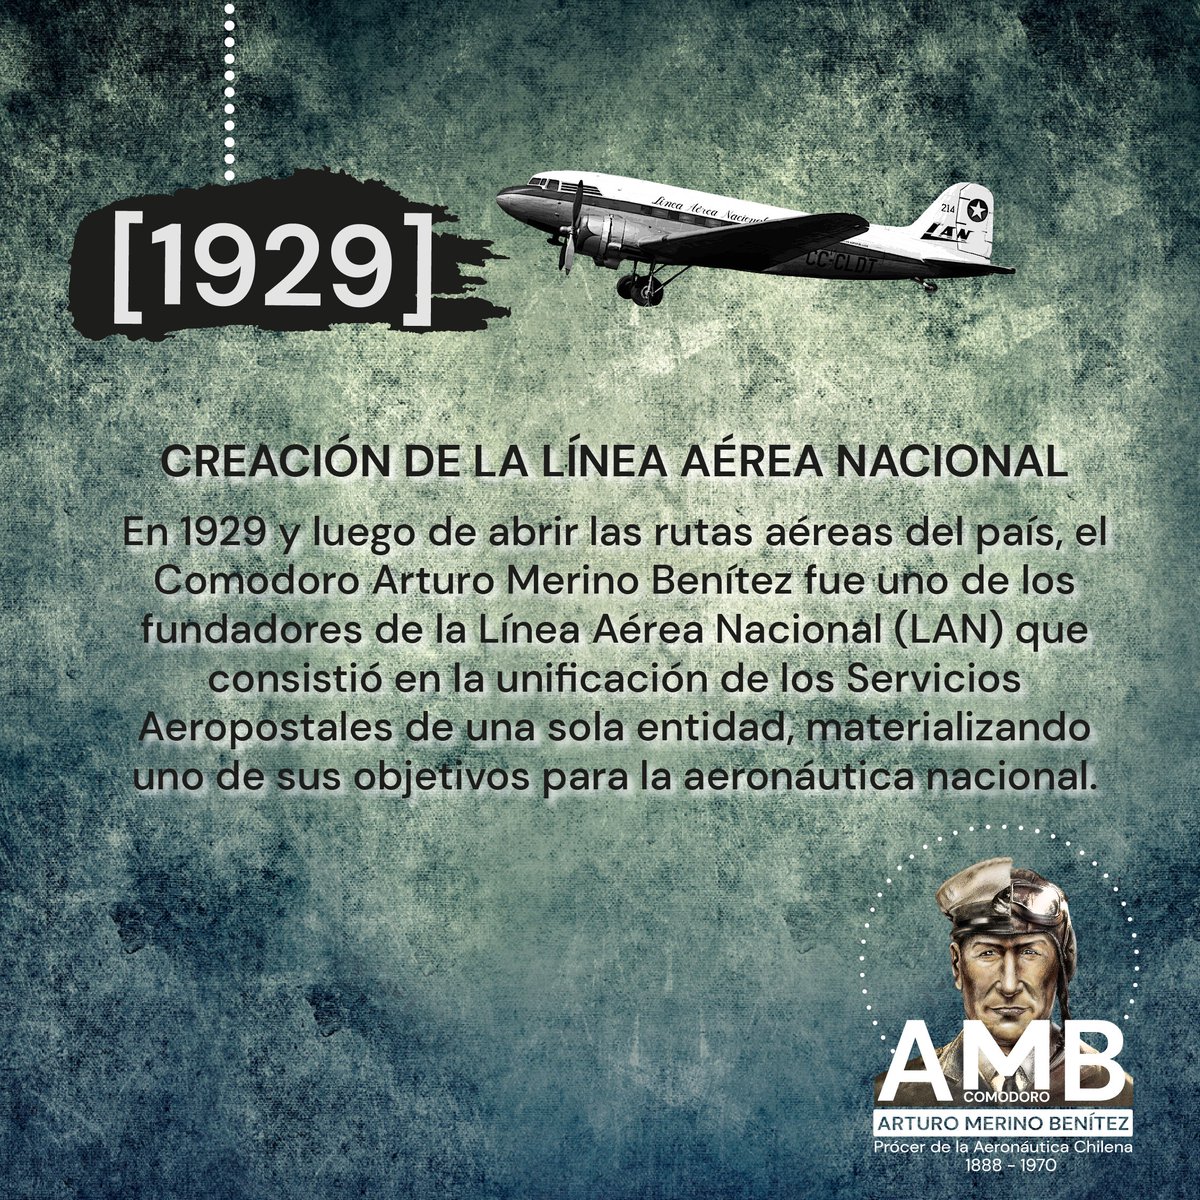 ¿Sabías que uno de los legados que dejó el Comodoro Arturo Merino Benítez a #Chile, fue la creación de la Línea Aérea Nacional? 🧐👇 @mindefchile @EmcoChile @subse_ffaa @SubseDefensa